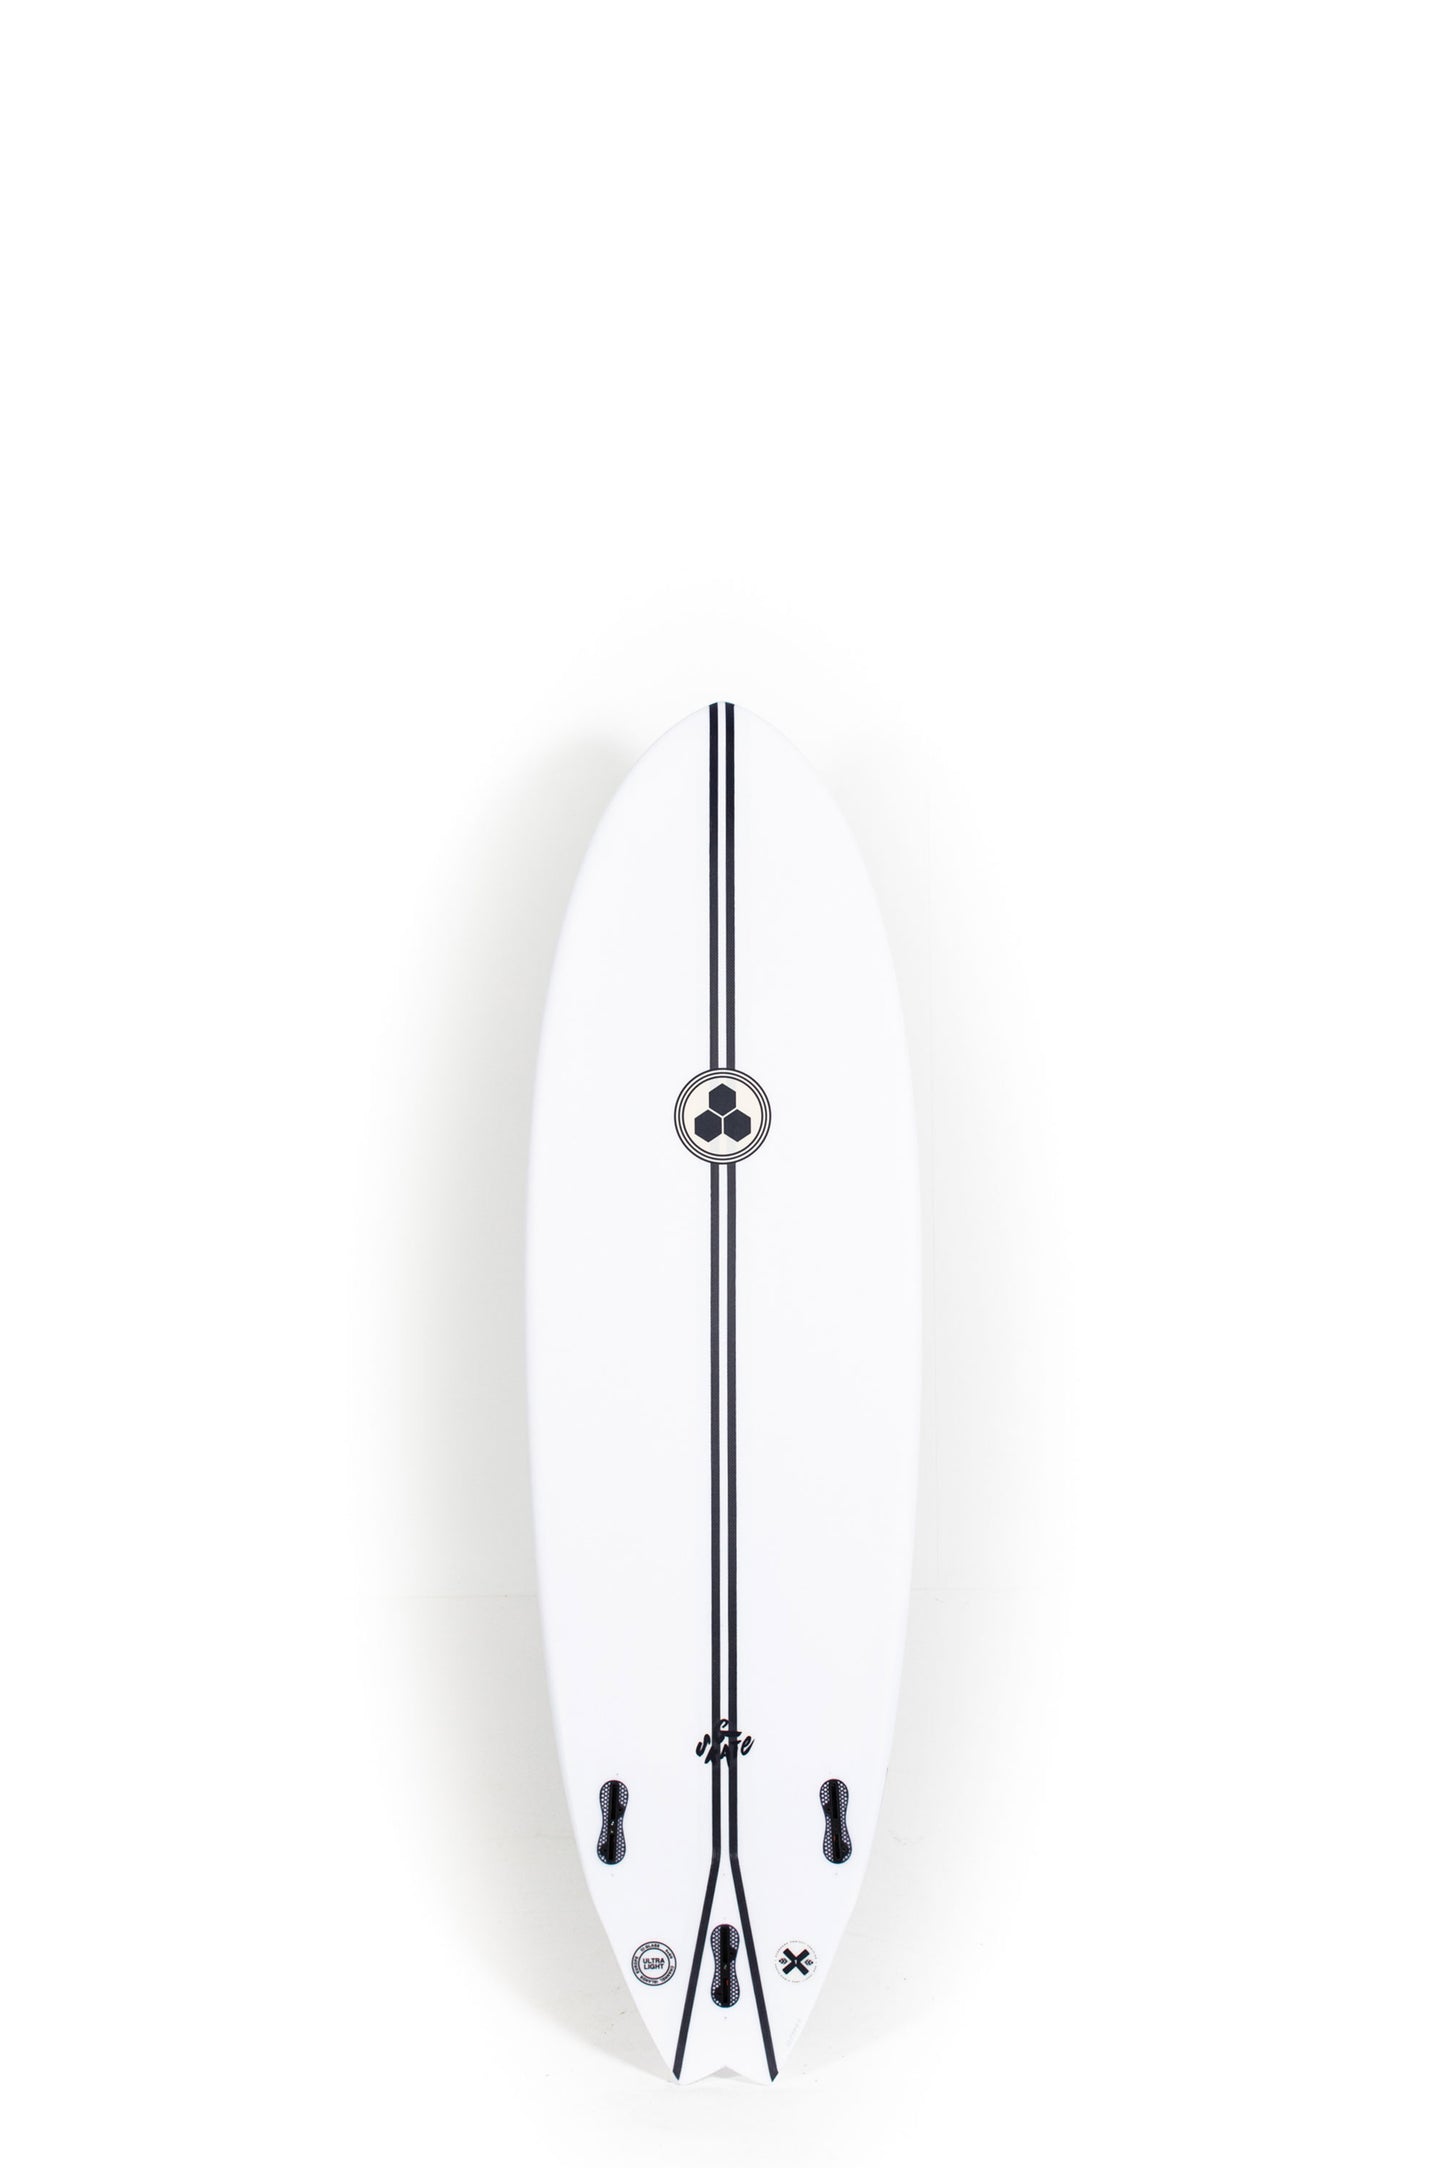 Pukas Surf Shop - Channel Islands - G-Skate by Al Merrick - SPINE TEK - 6'0" x 20 1/2 x 2 3/4 - 38L - CI27824